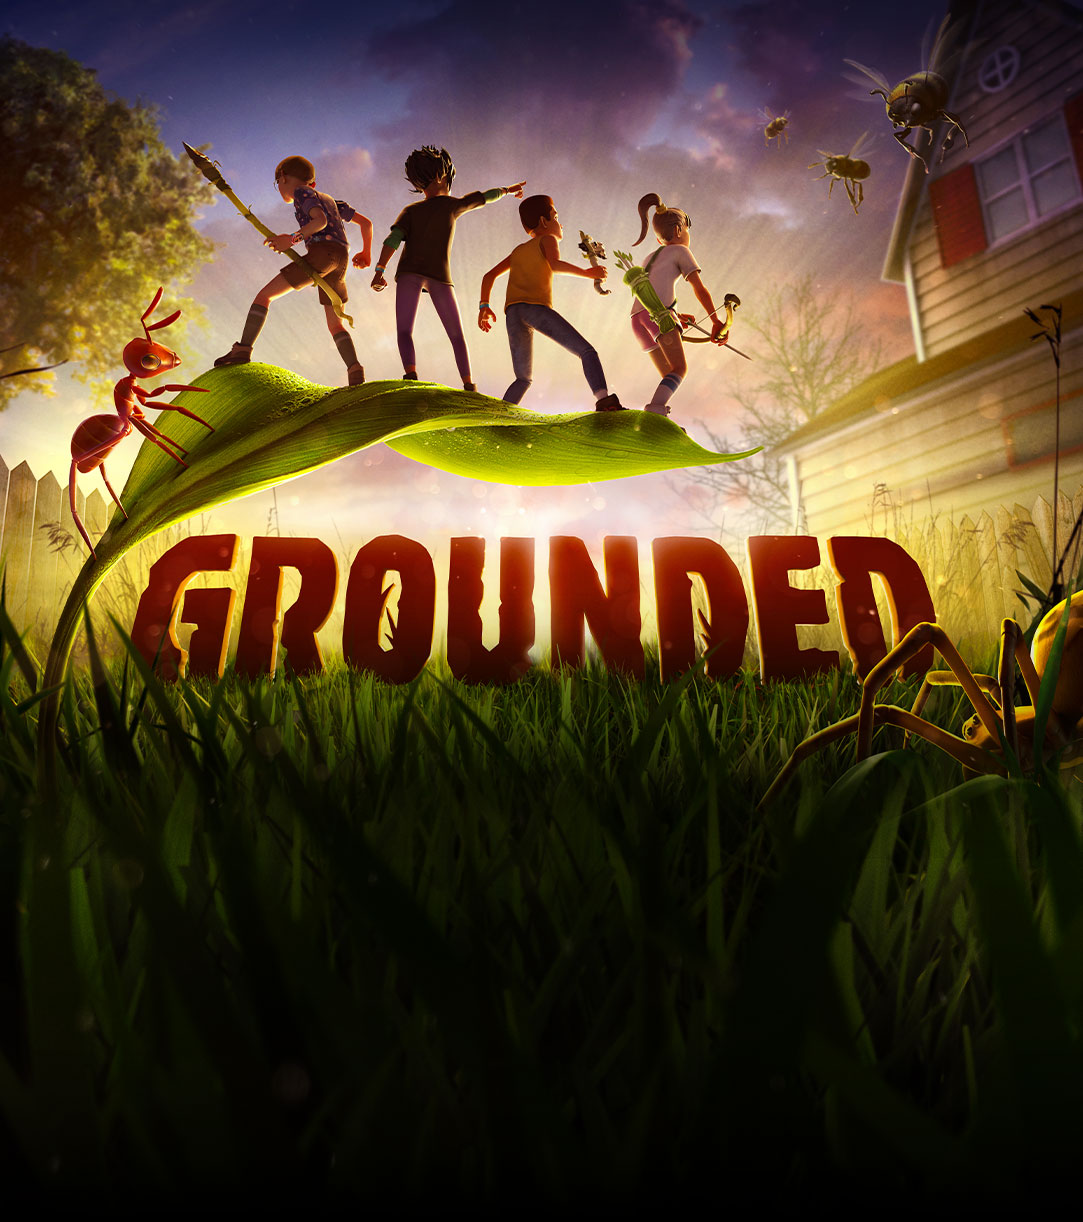 Animation einer großen Spinne, die vor einem Blatt durchs Gras geht und 4 miniaturisierte menschliche Kinder hält